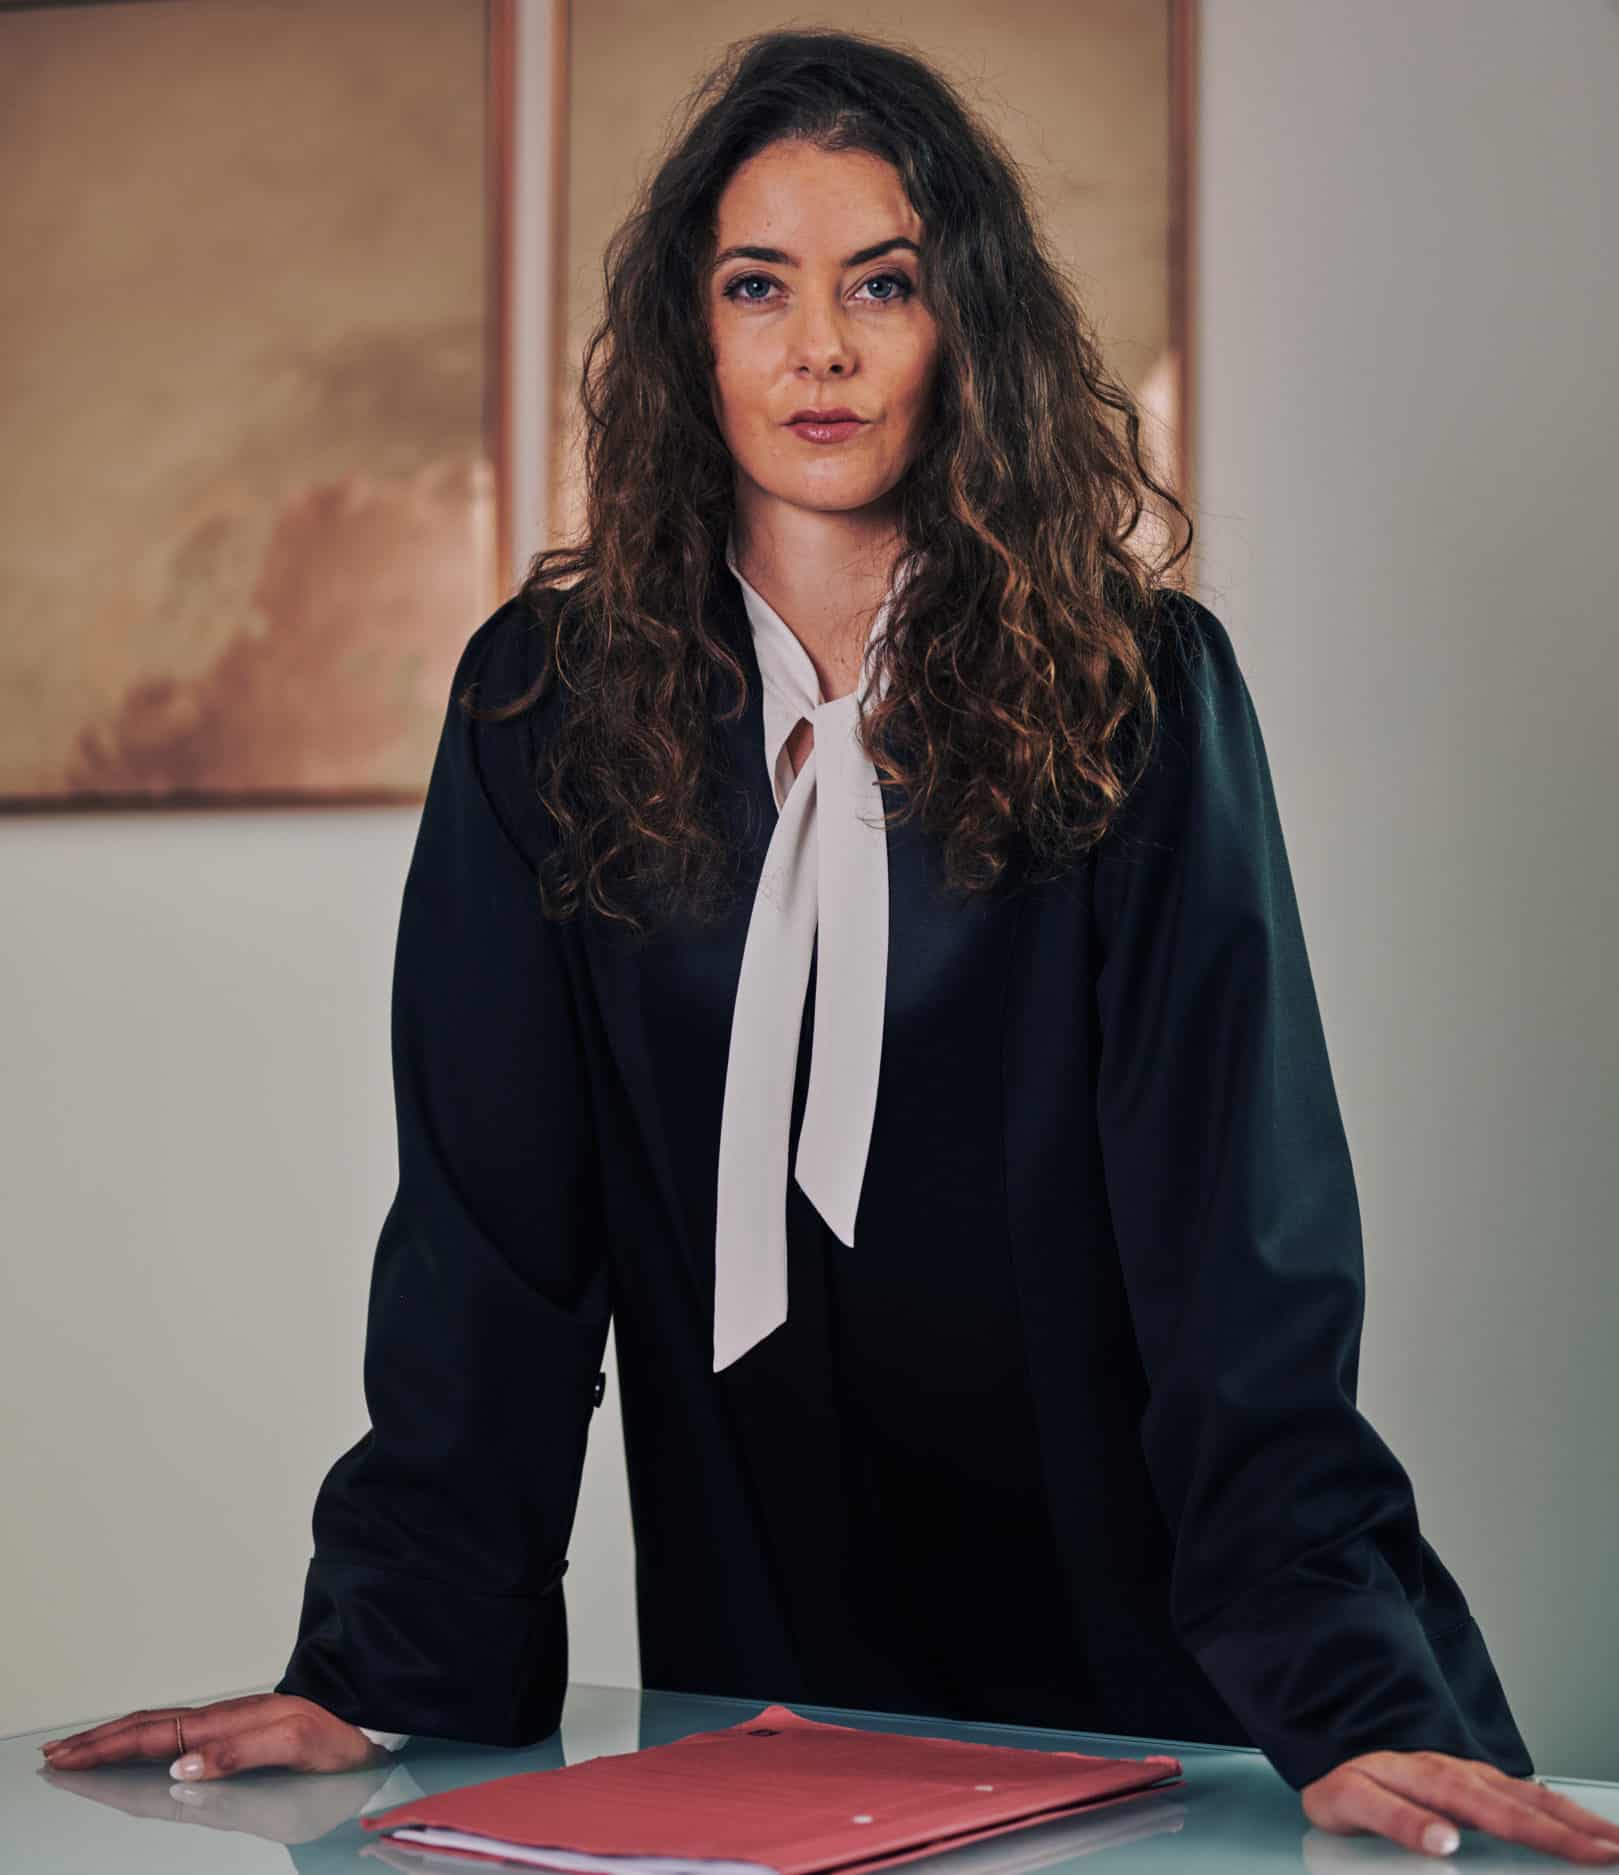 Strafverteidigung: Dr. Jasmin HAIDER in einer Robe